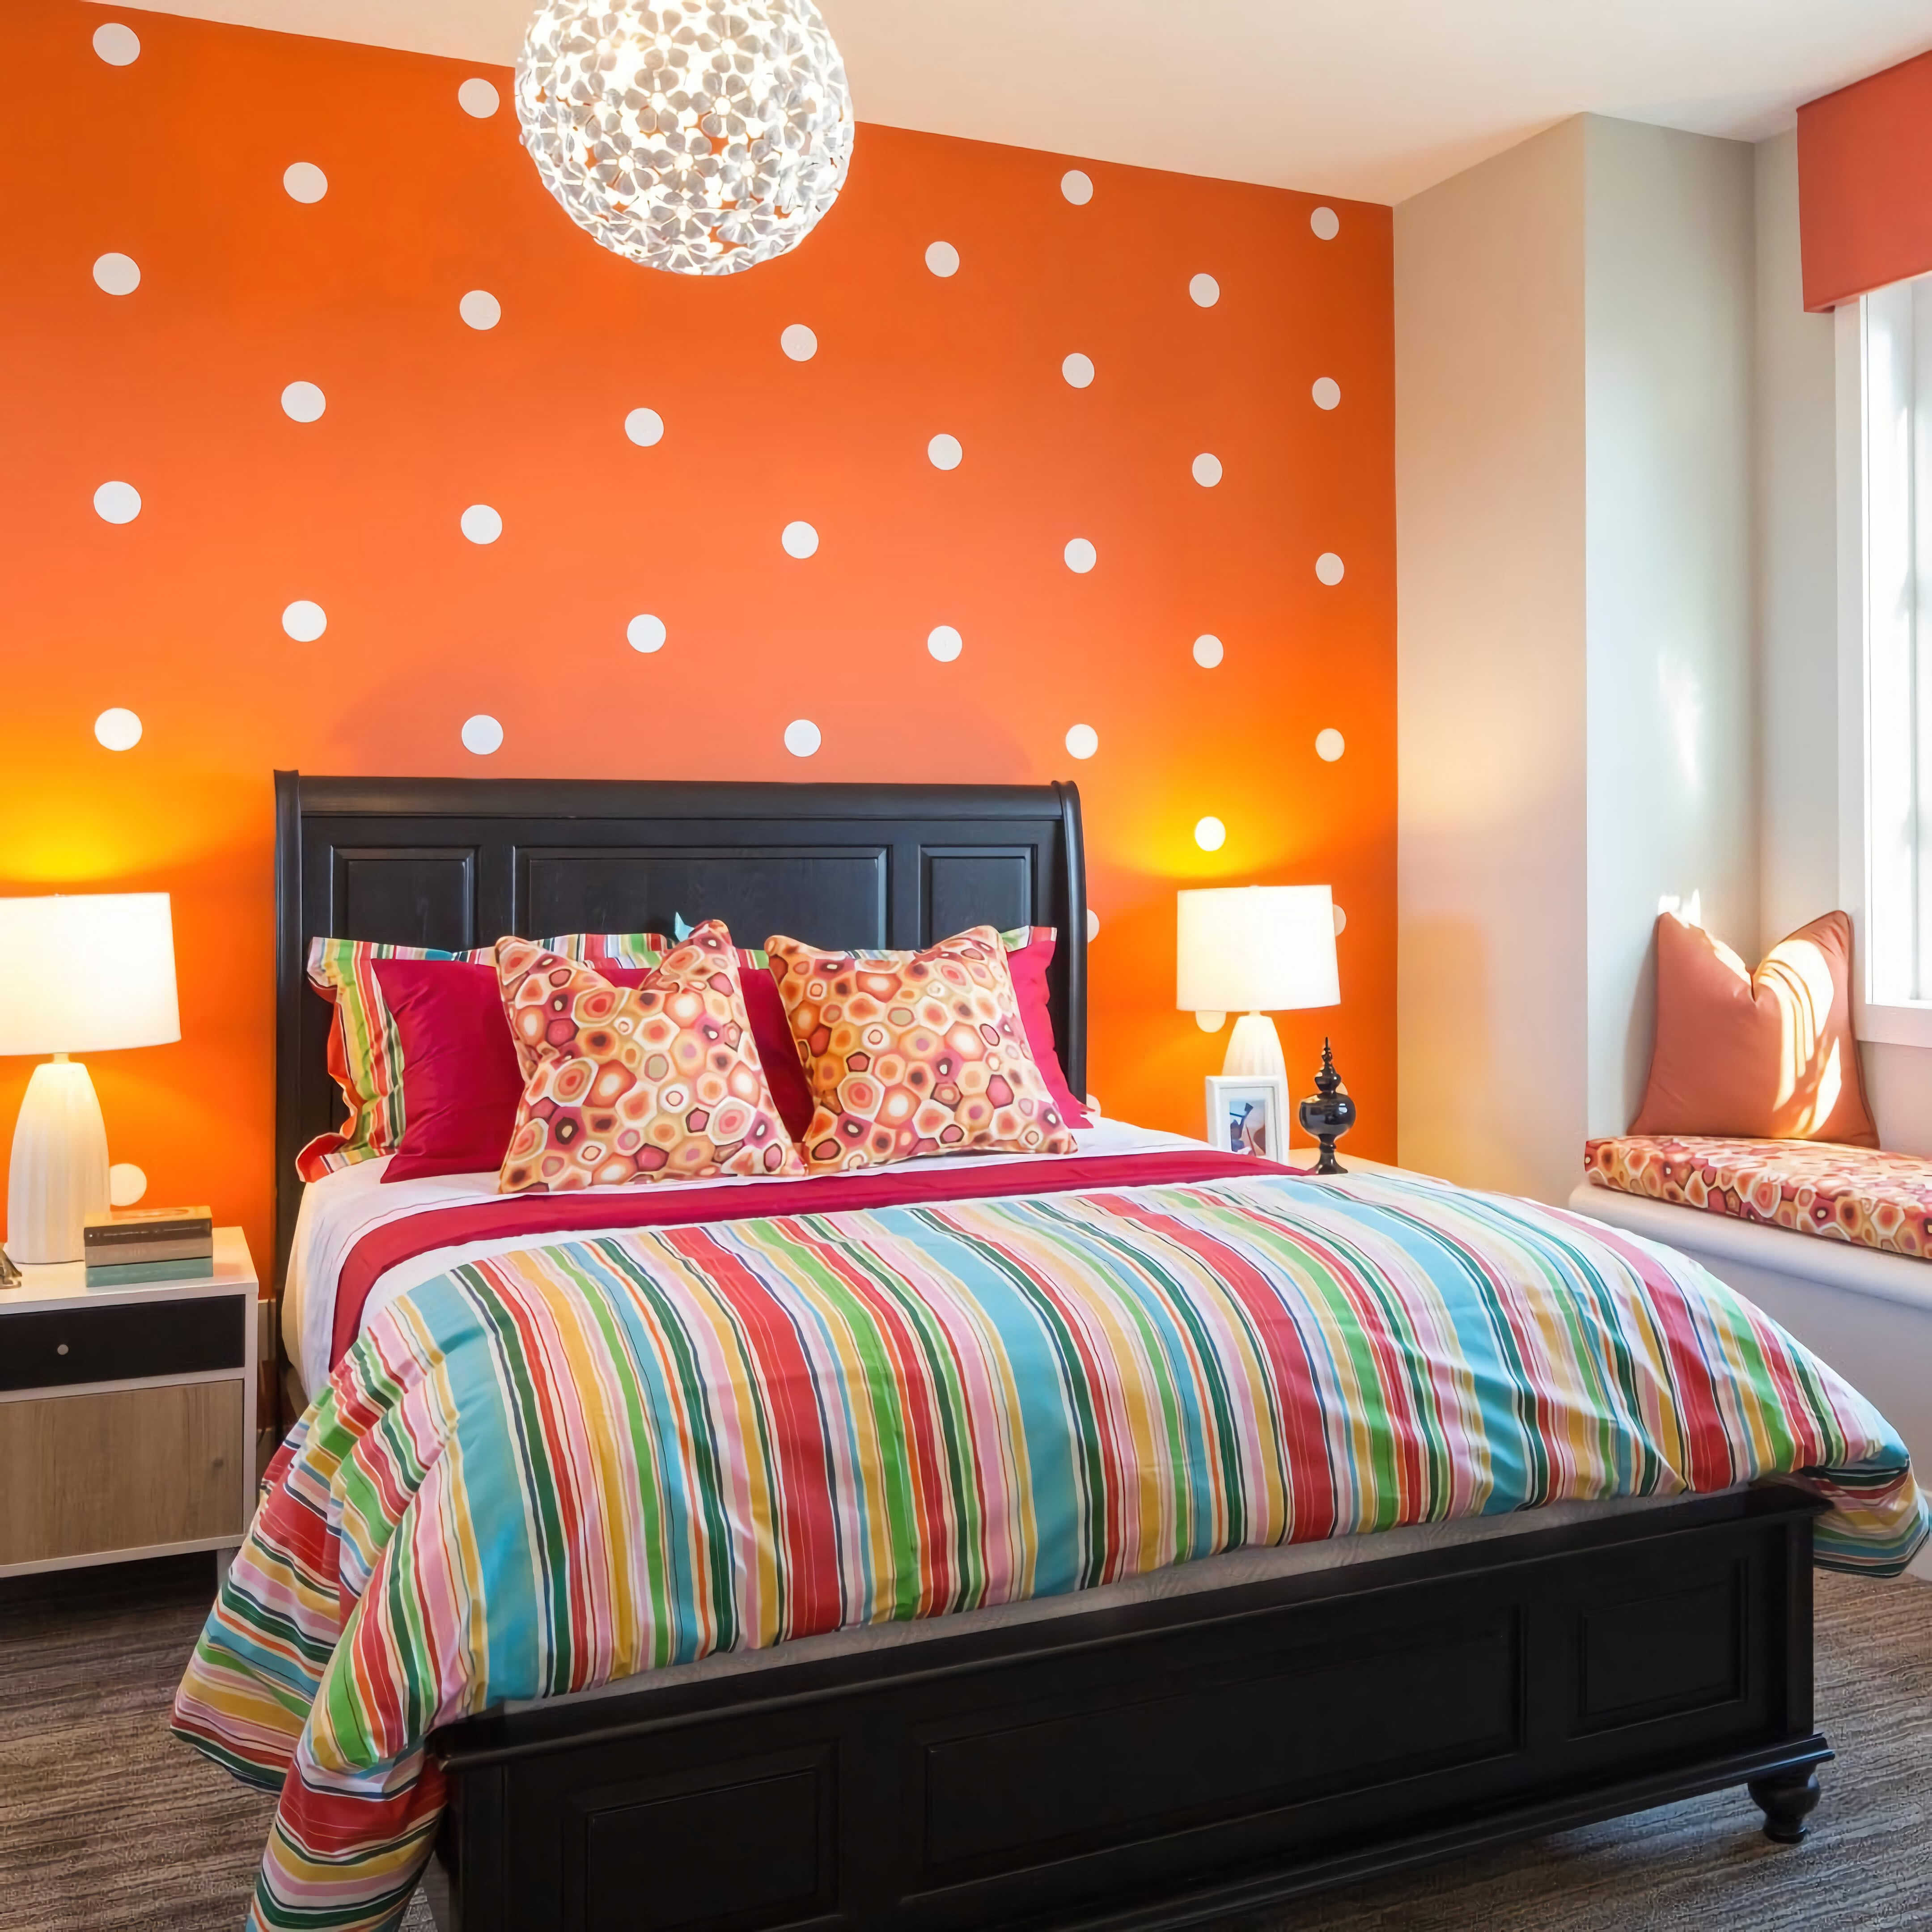 Сочетание цветов с оранжевым в интерьере комнаты